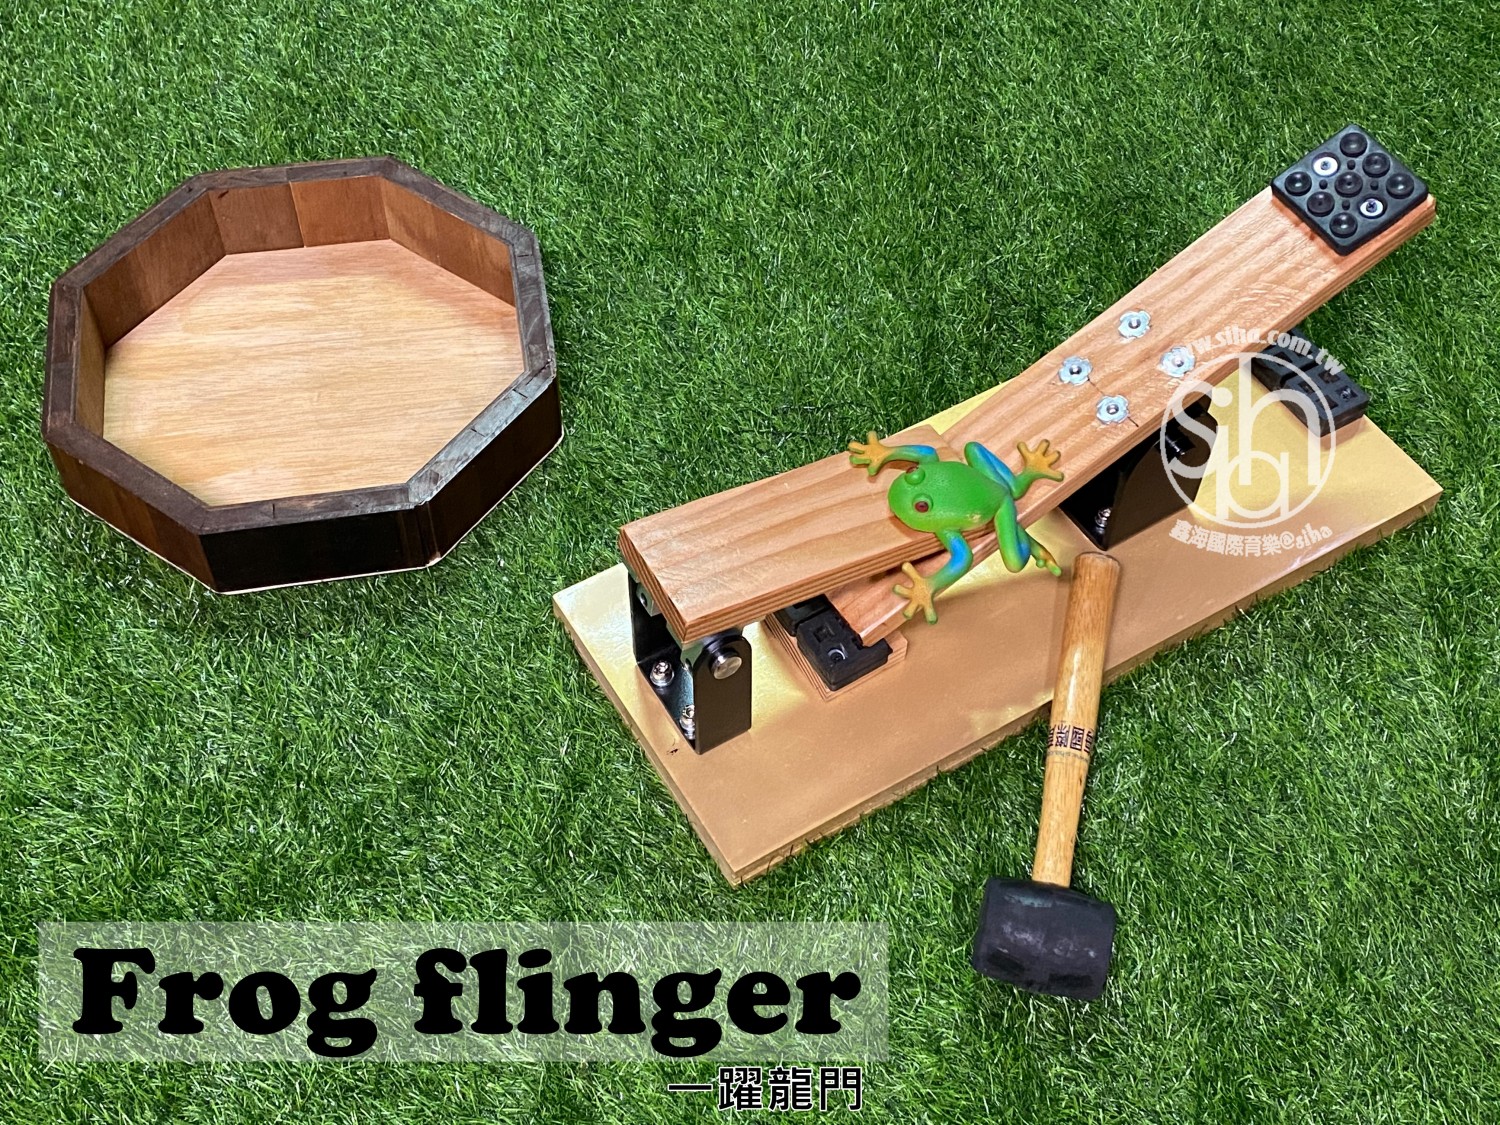 Frog Flinger 一躍龍門